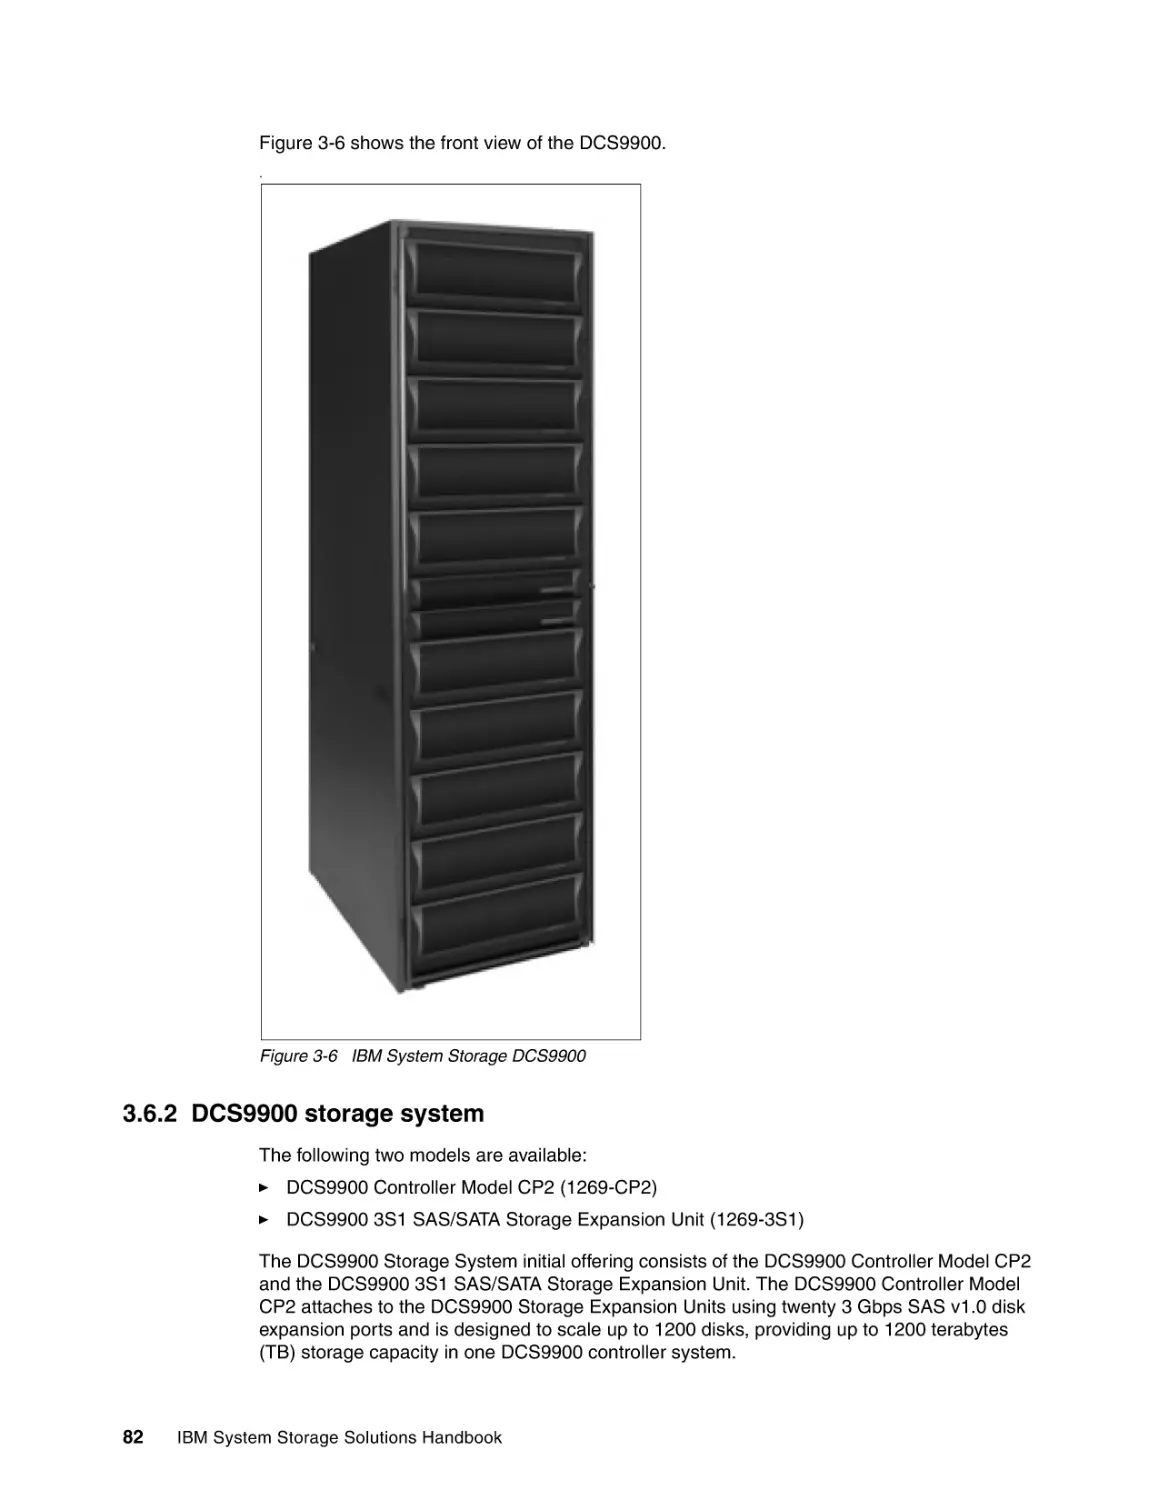 3.6.2 DCS9900 storage system